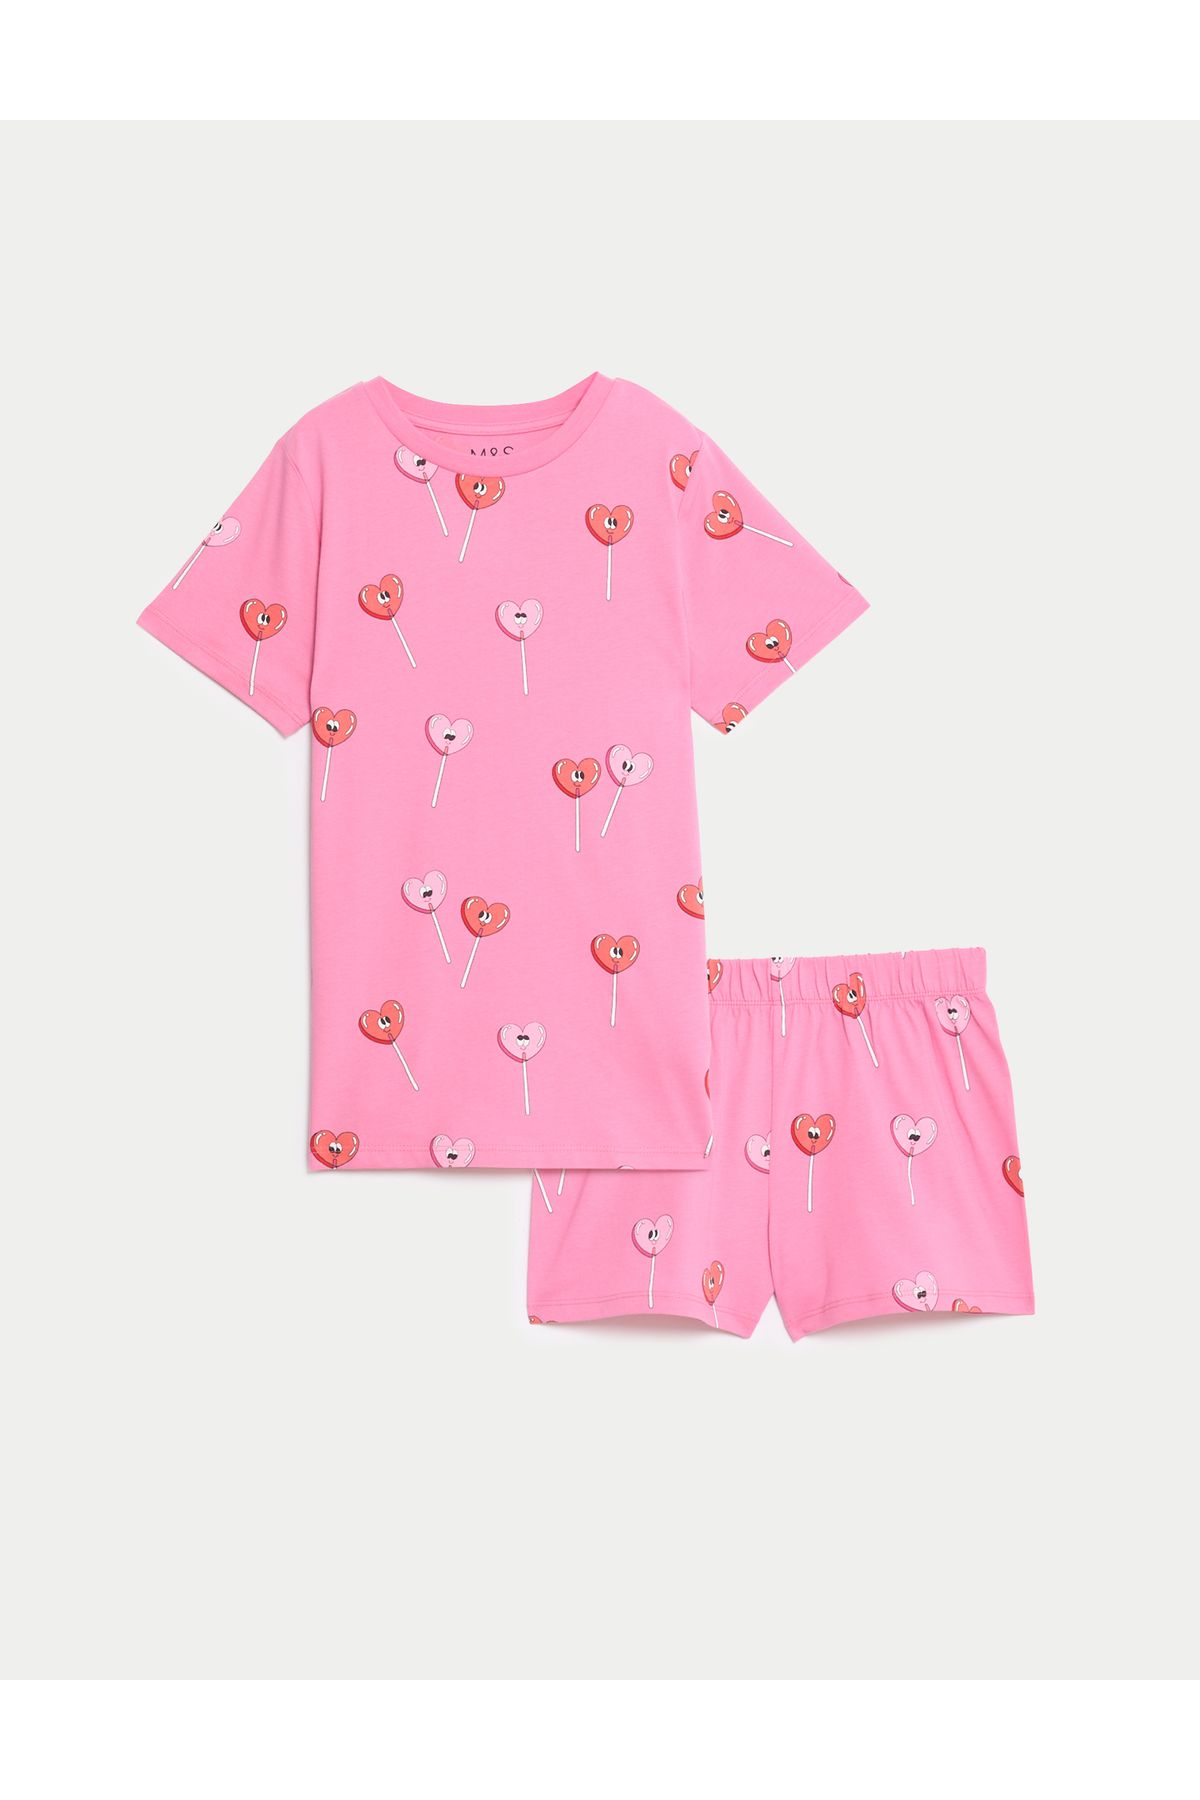 Marks & Spencer Saf Pamuklu Kalp Desenli Pijama Takımı (7-14 Yaş)